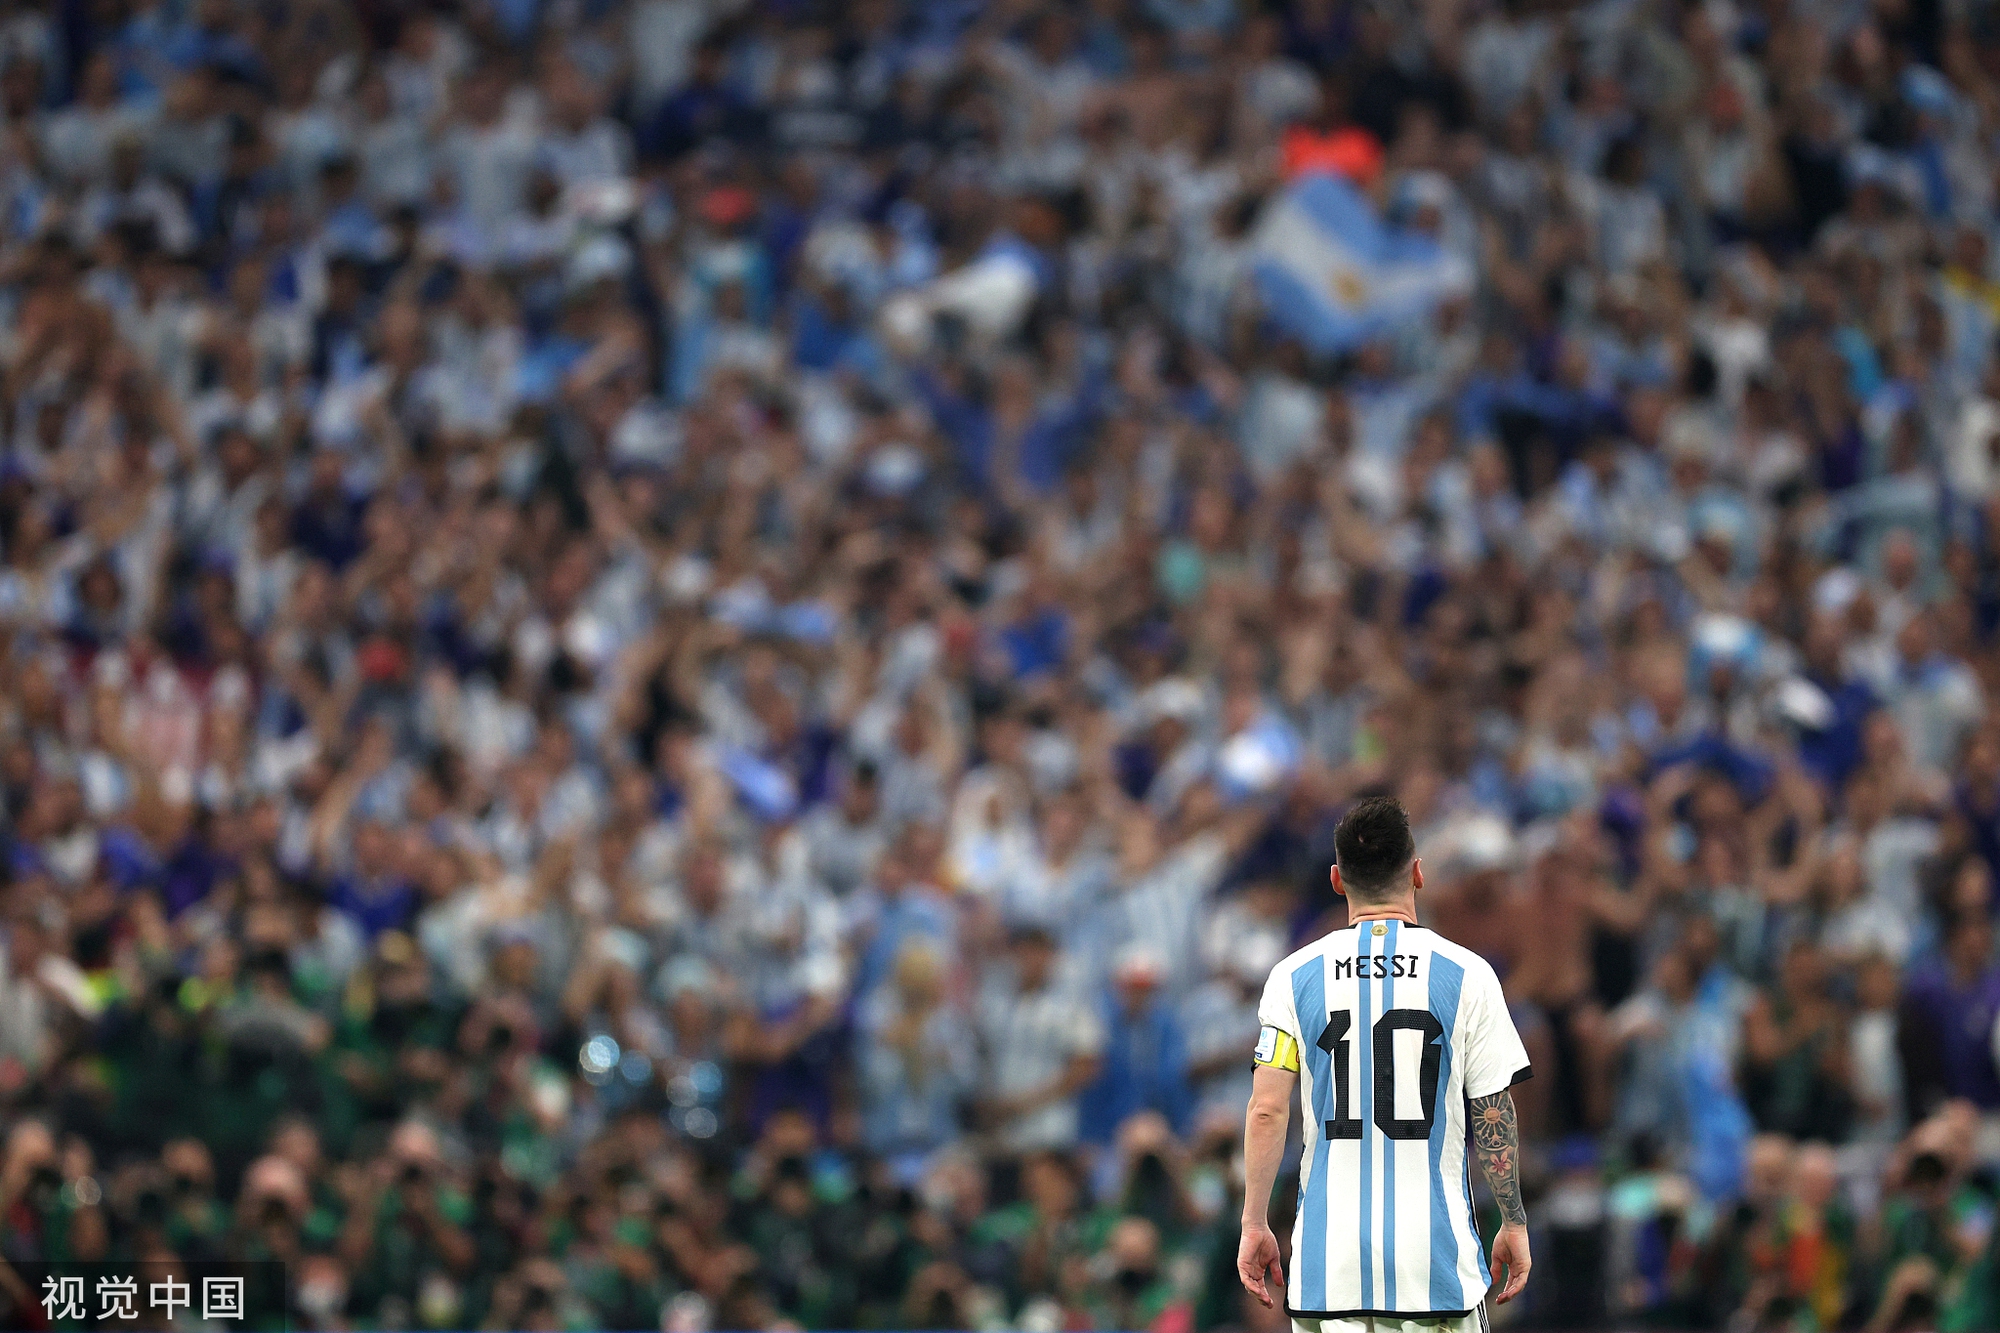 Vô địch World Cup hay không, Messi vẫn là cầu thủ vĩ đại nhất - Ảnh 1.